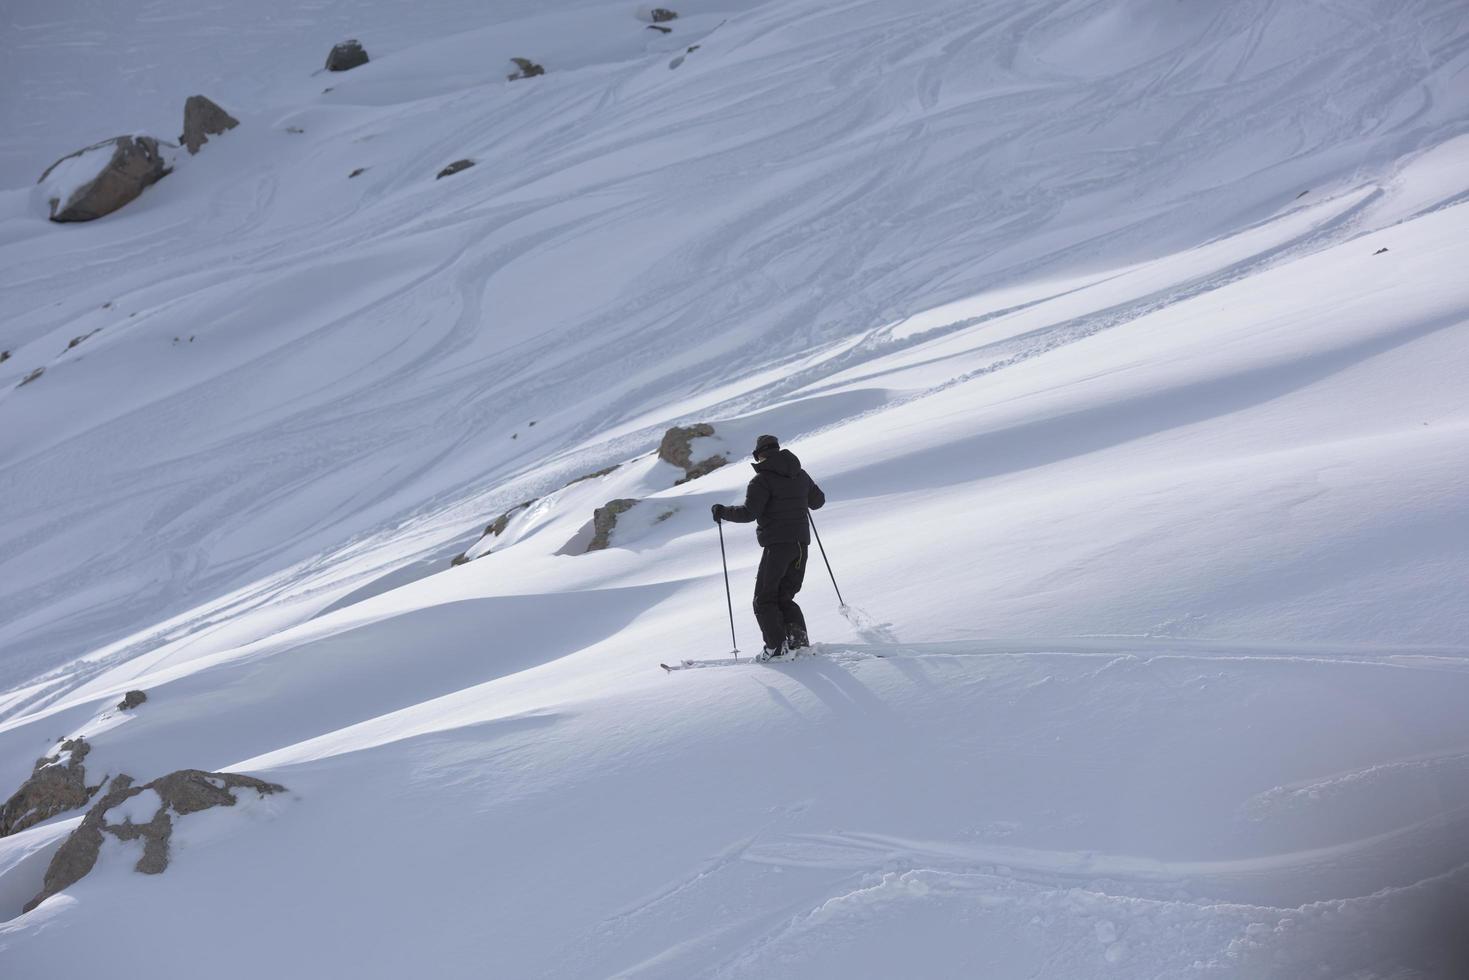 freeride skiër skiën in diepe poedersneeuw foto